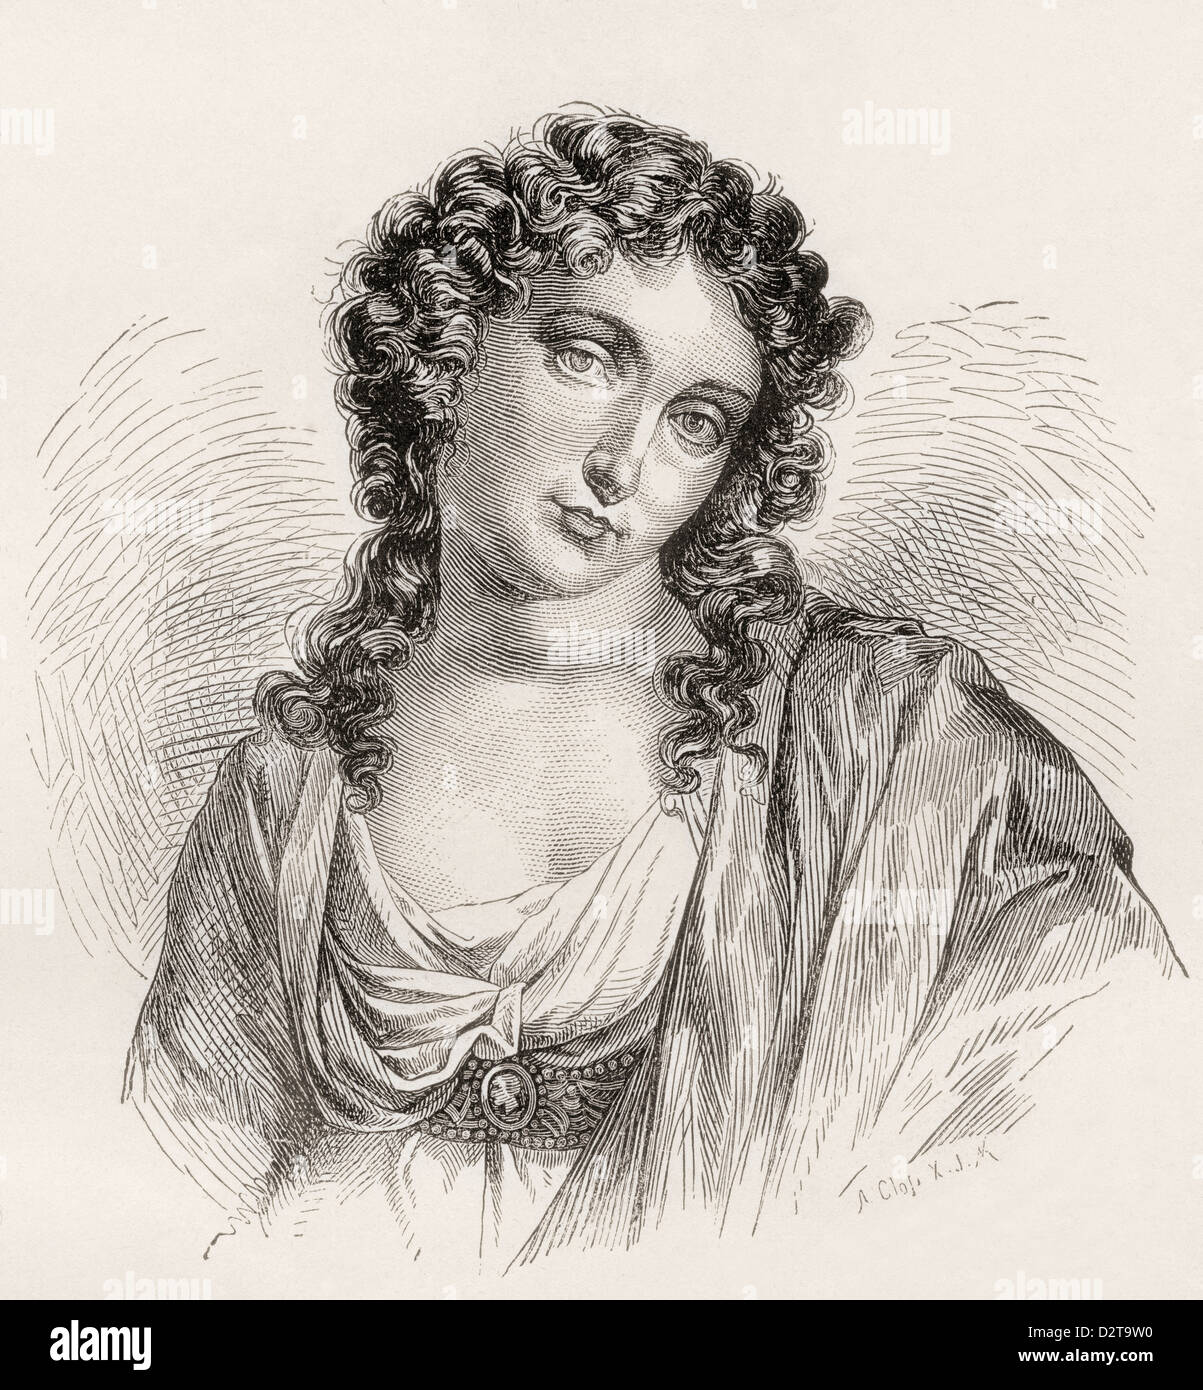 Emma, Lady Hamilton, né Amy Lyon, 1765 - 1815. La maîtresse de Lord Nelson et muse de George Romney. Banque D'Images